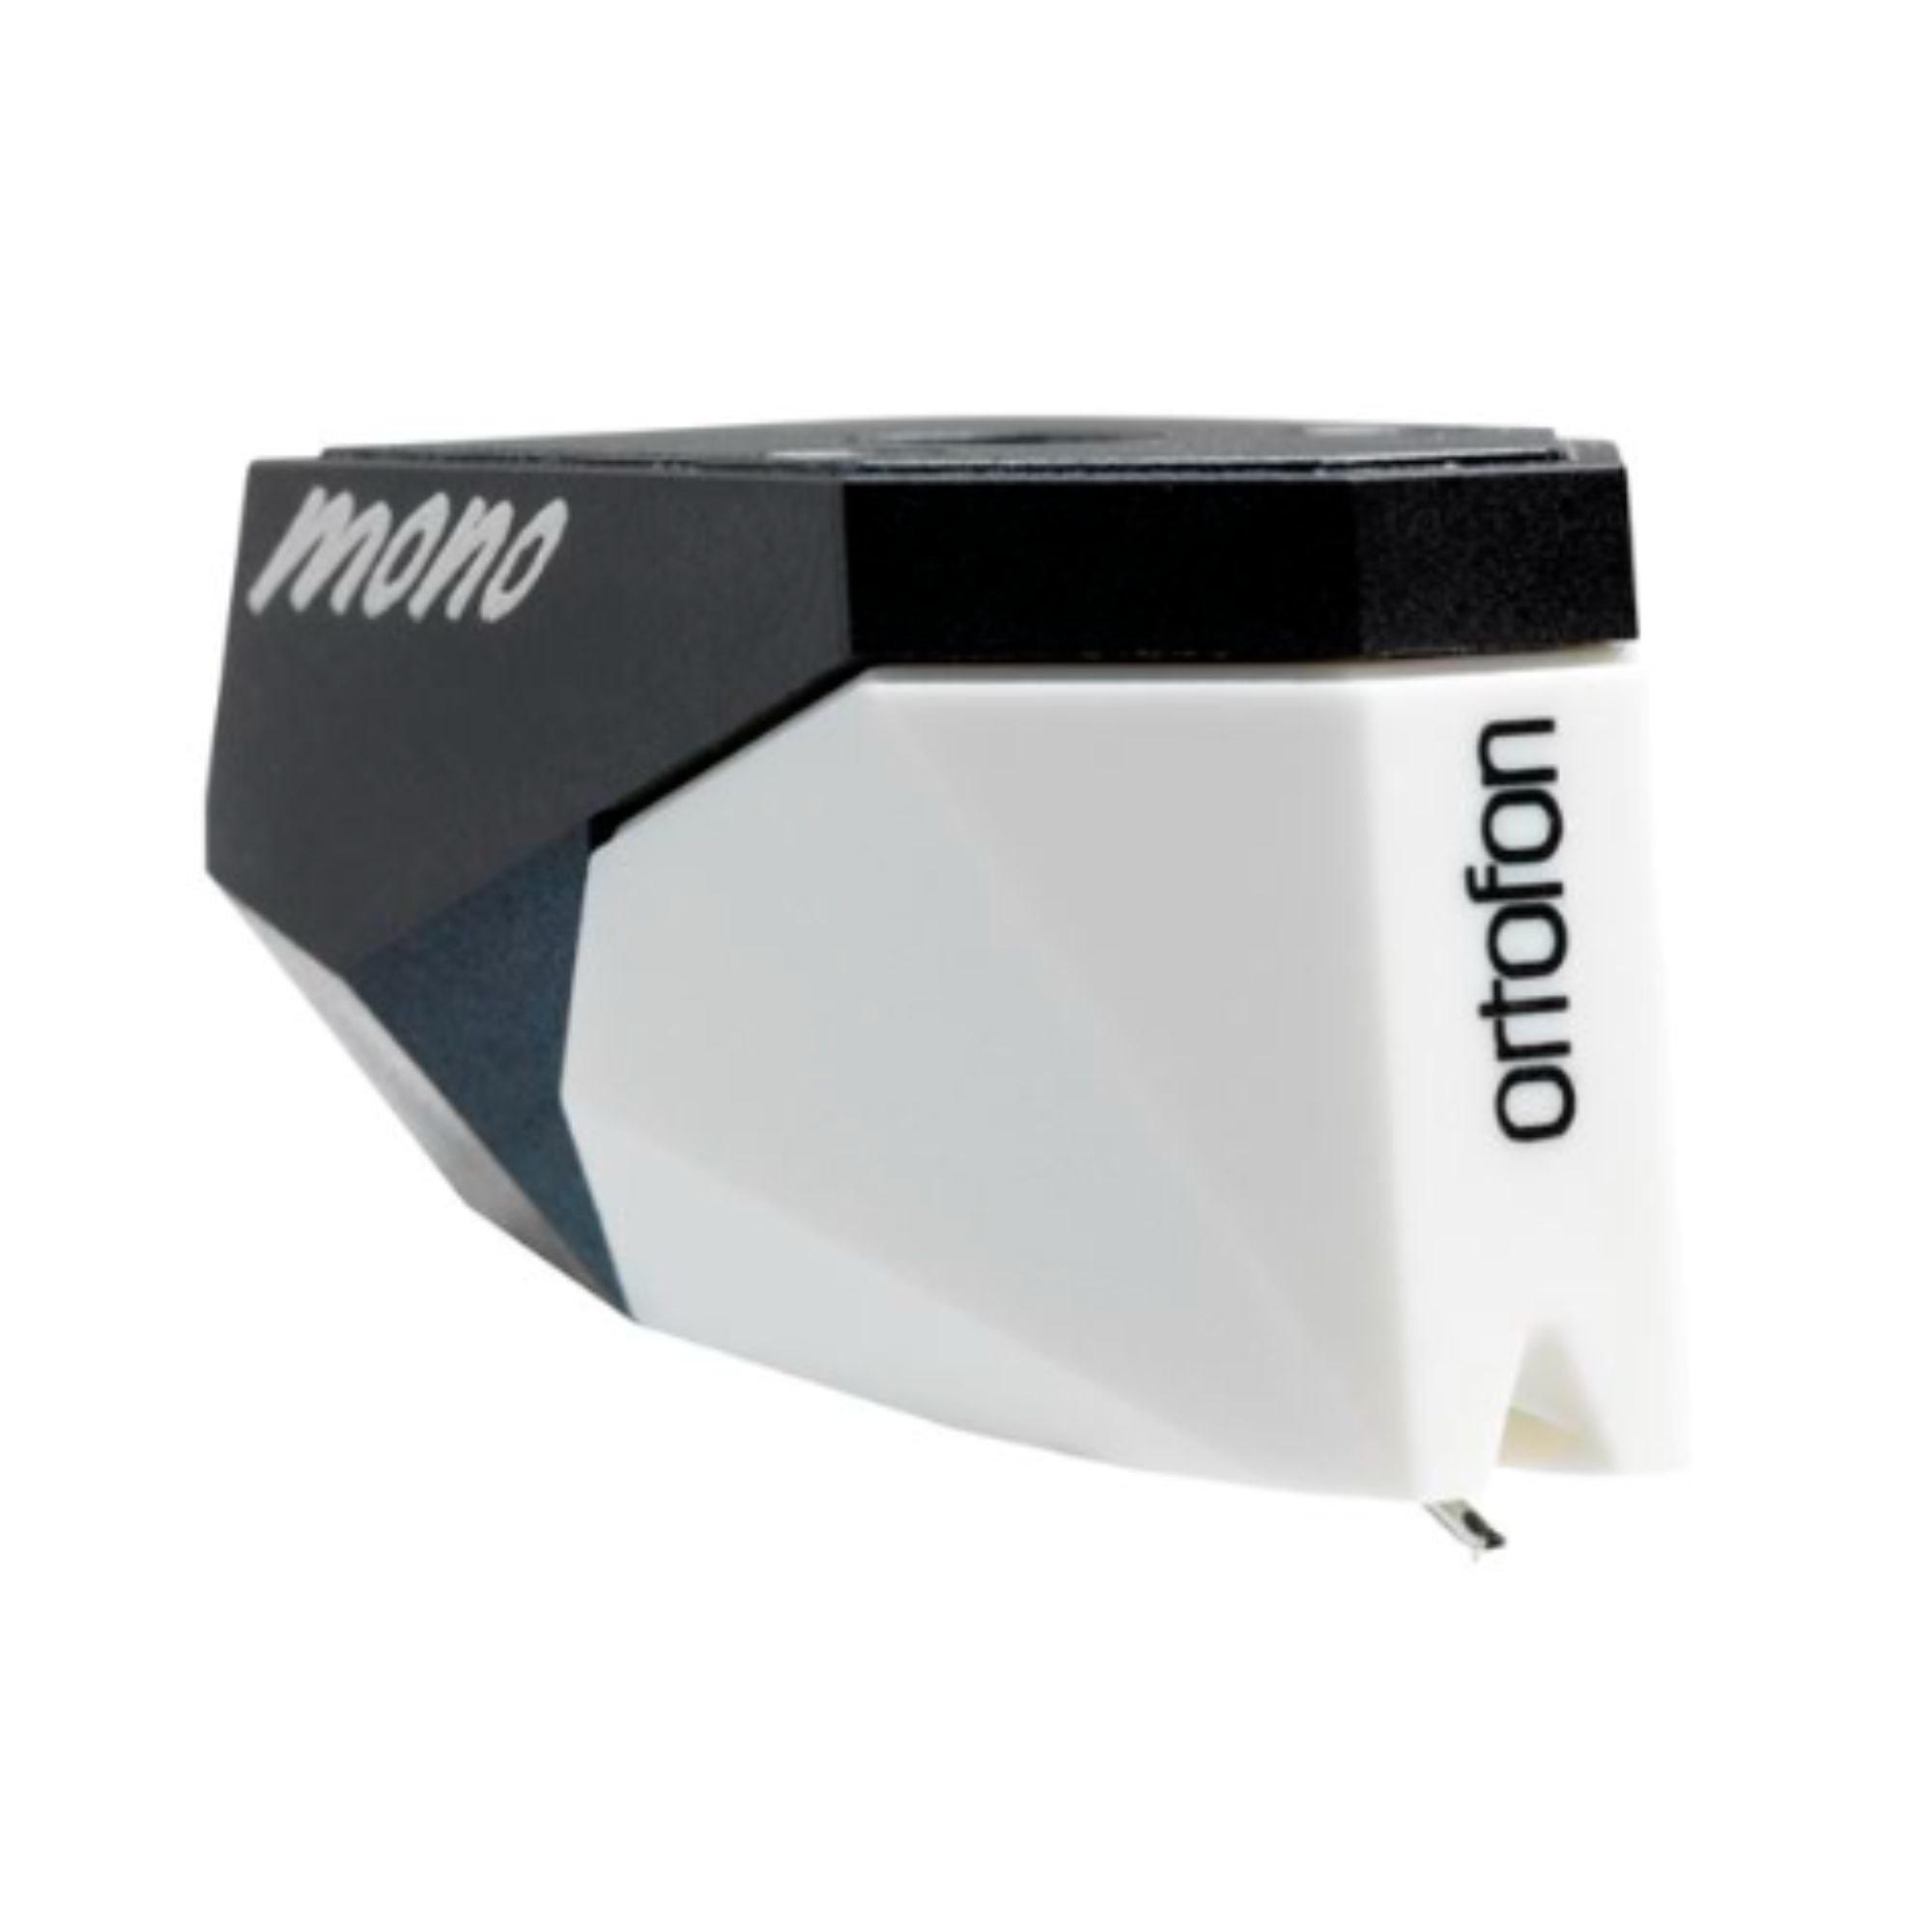 Ortofon 2M Mono Verso - Moving Magnet Cartridge, Ortofon, Turntable Accessories - AVStore.in